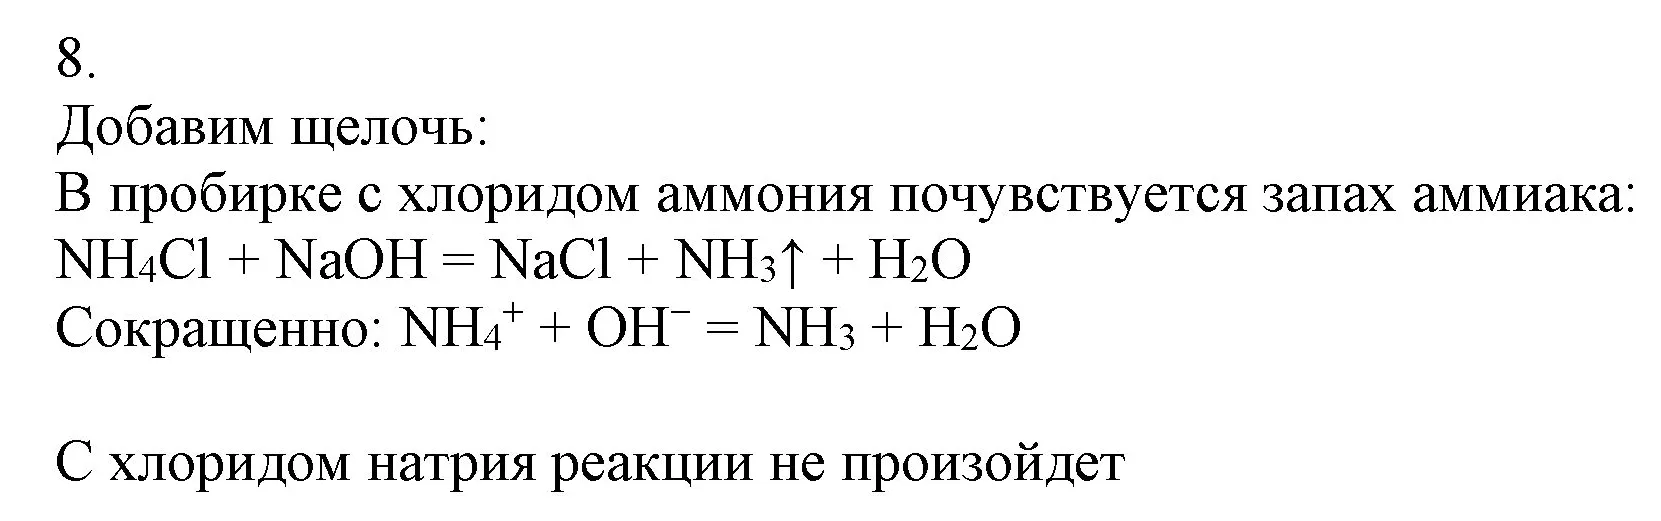 Решение номер 8 (страница 93) гдз по химии 9 класс Габриелян, Остроумов, учебник